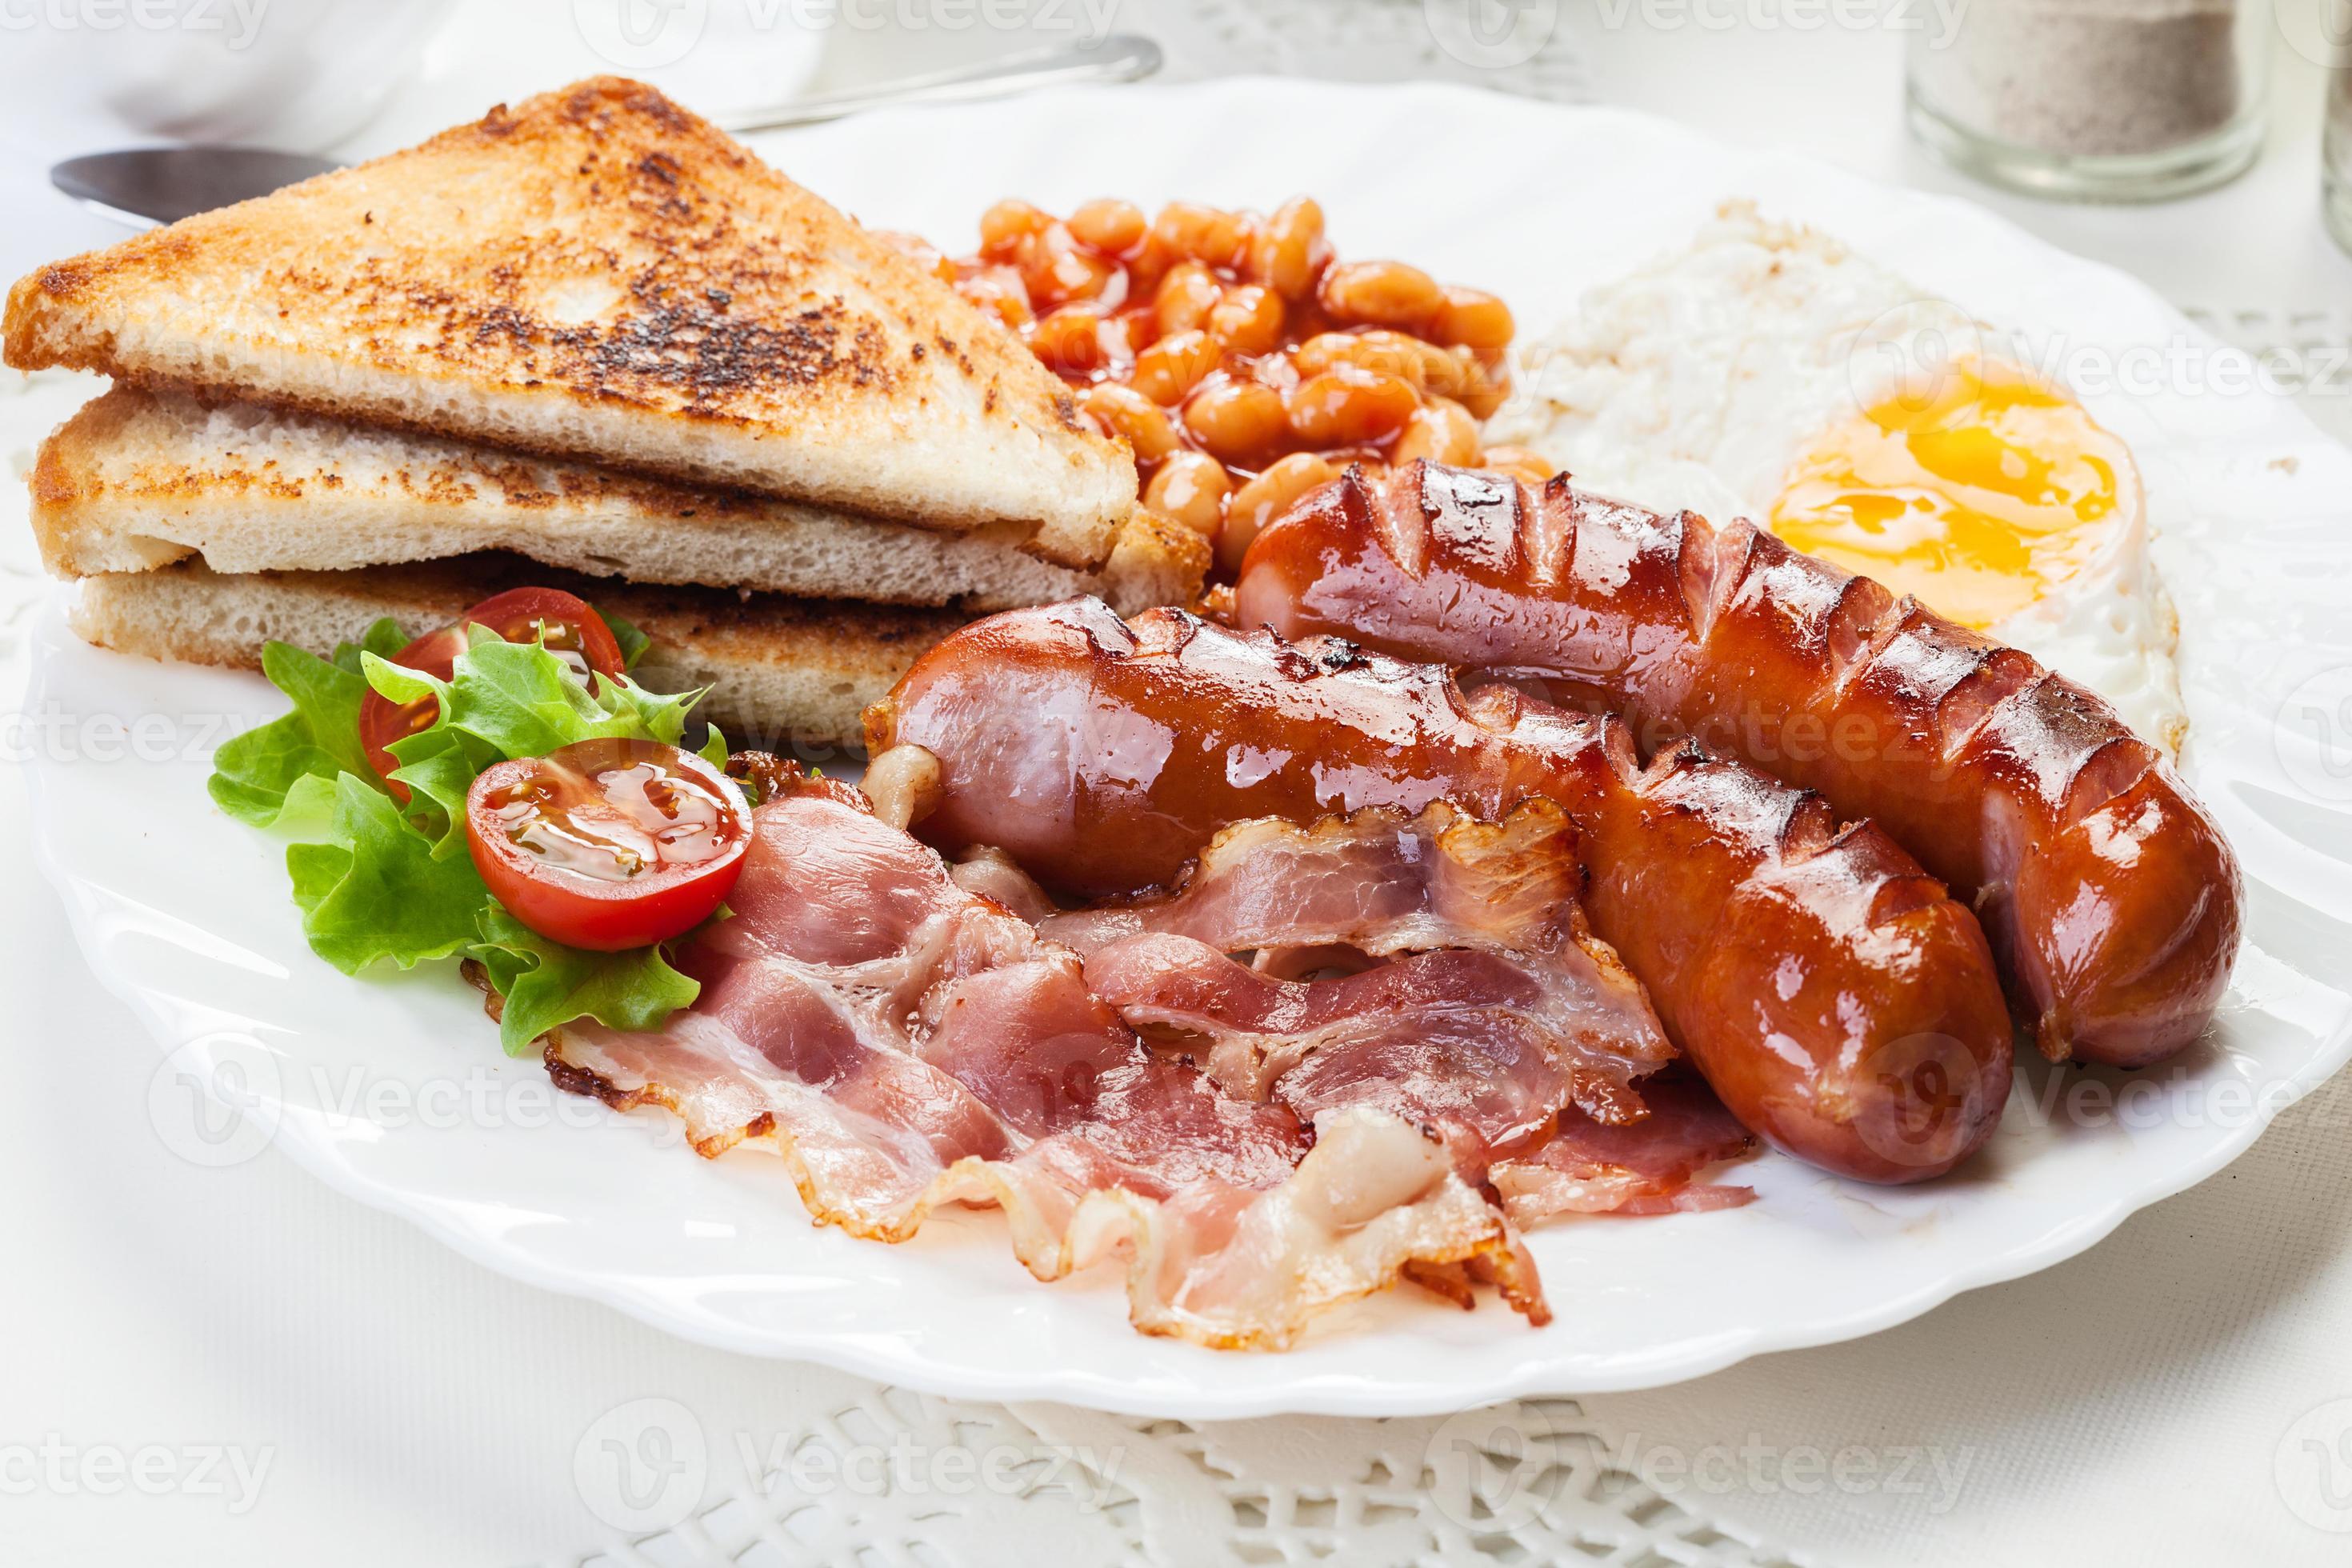 full engelsk frukost med bacon, korv, ägg och bakade bönor foto